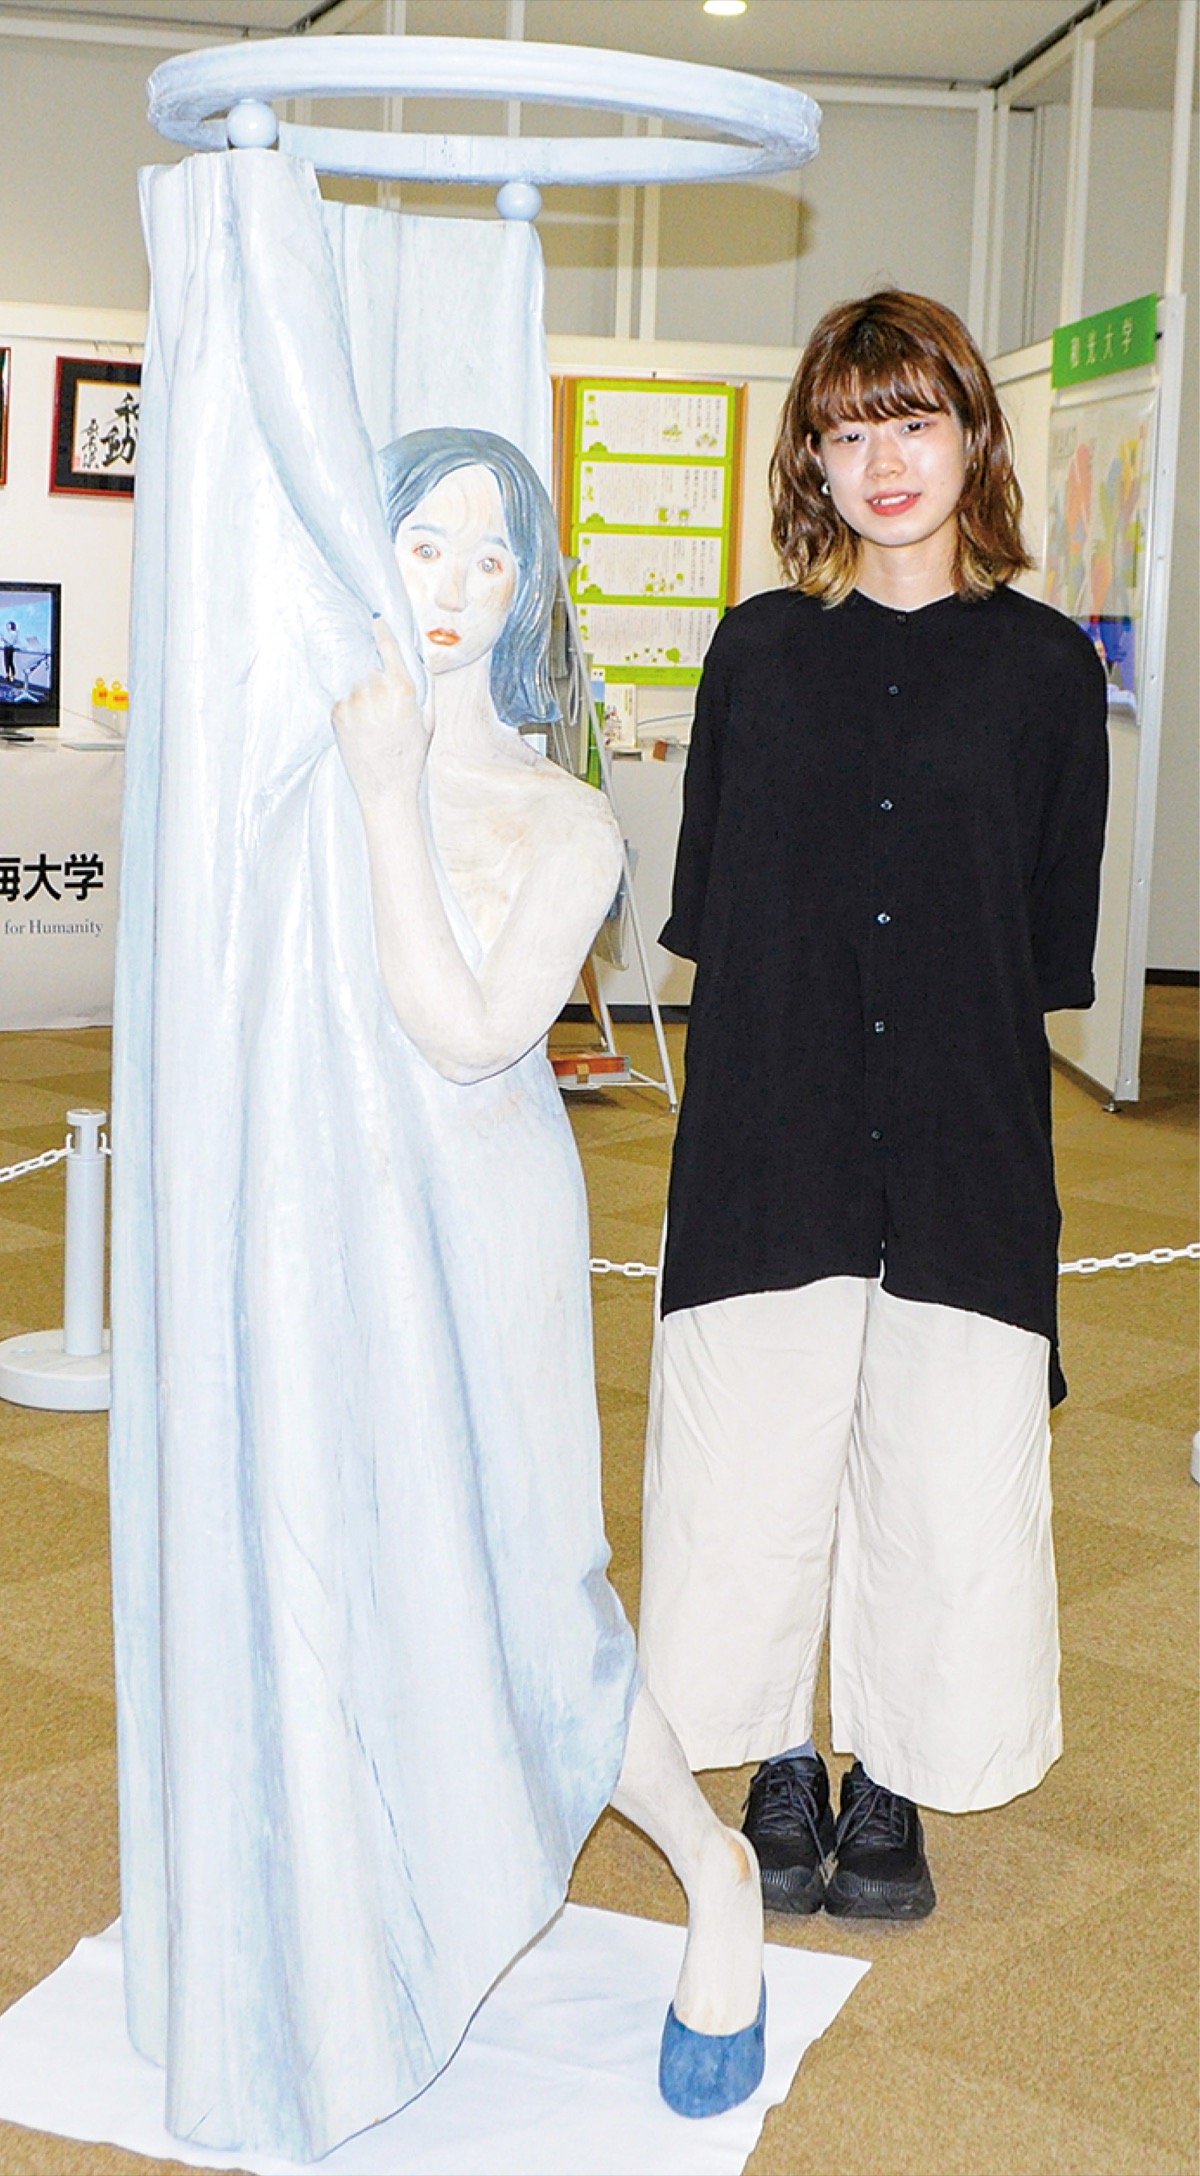 ｢木彫の女性像｣展示